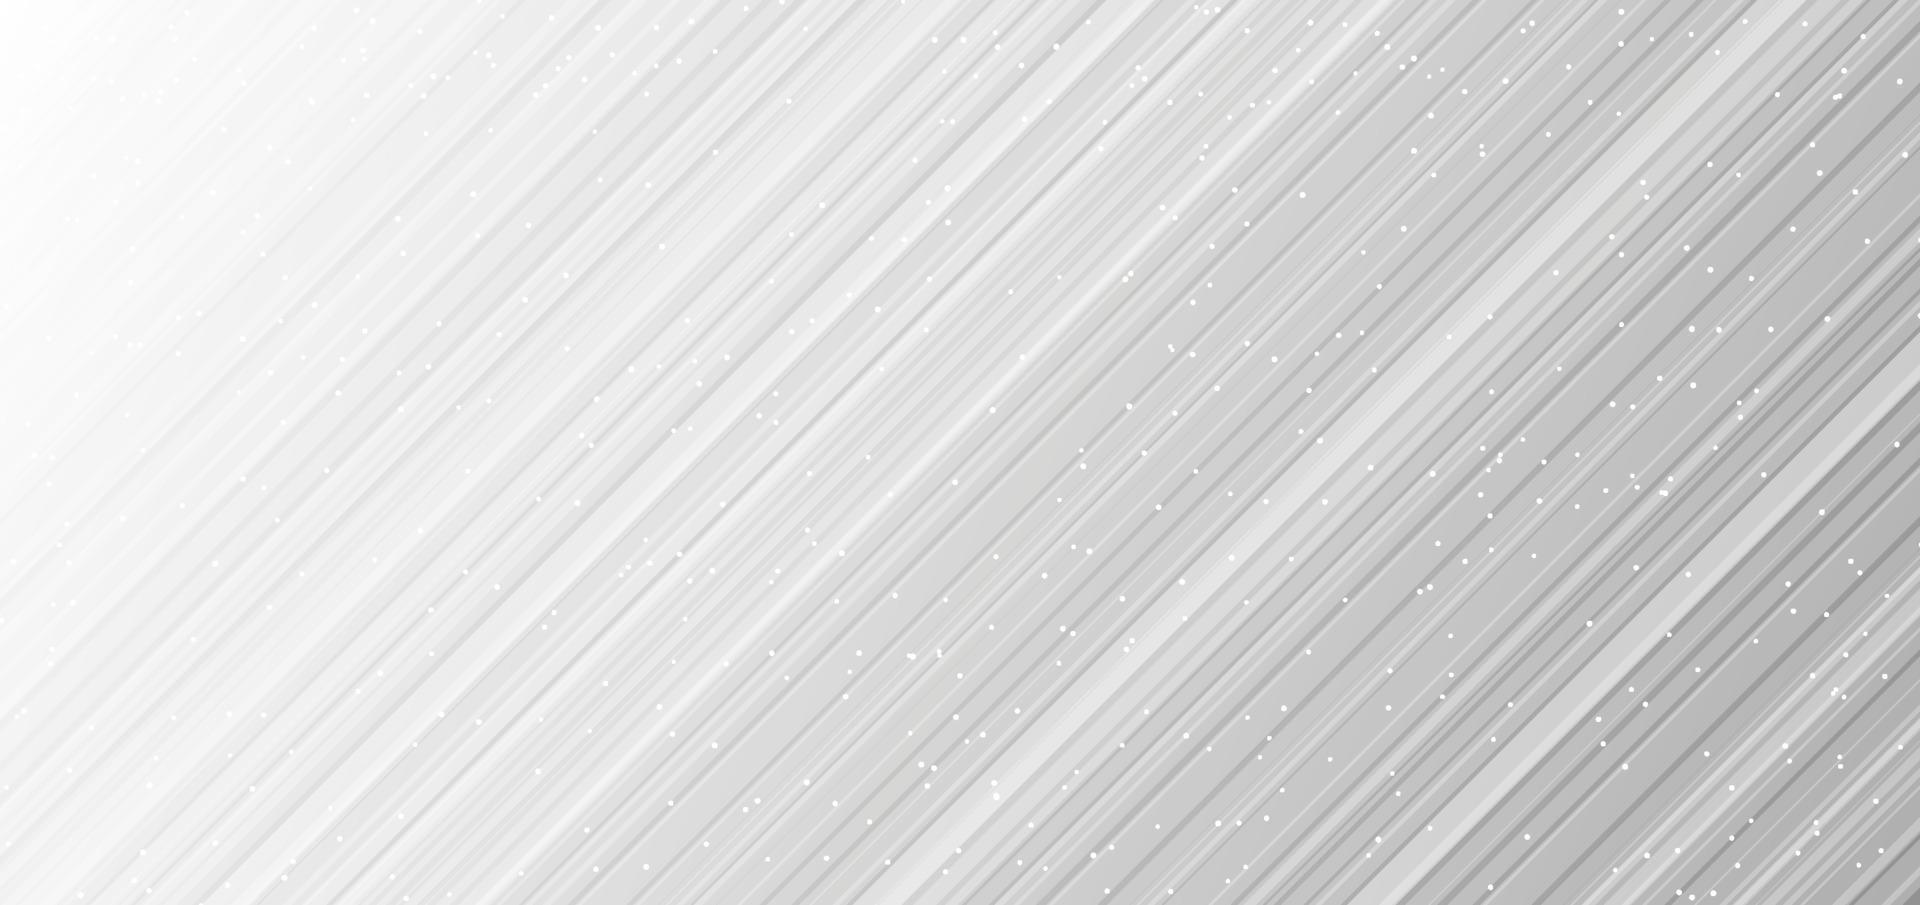 abstracte witte en grijze diagonale gestreepte lijnen met veel puntenachtergrond en textuur vector